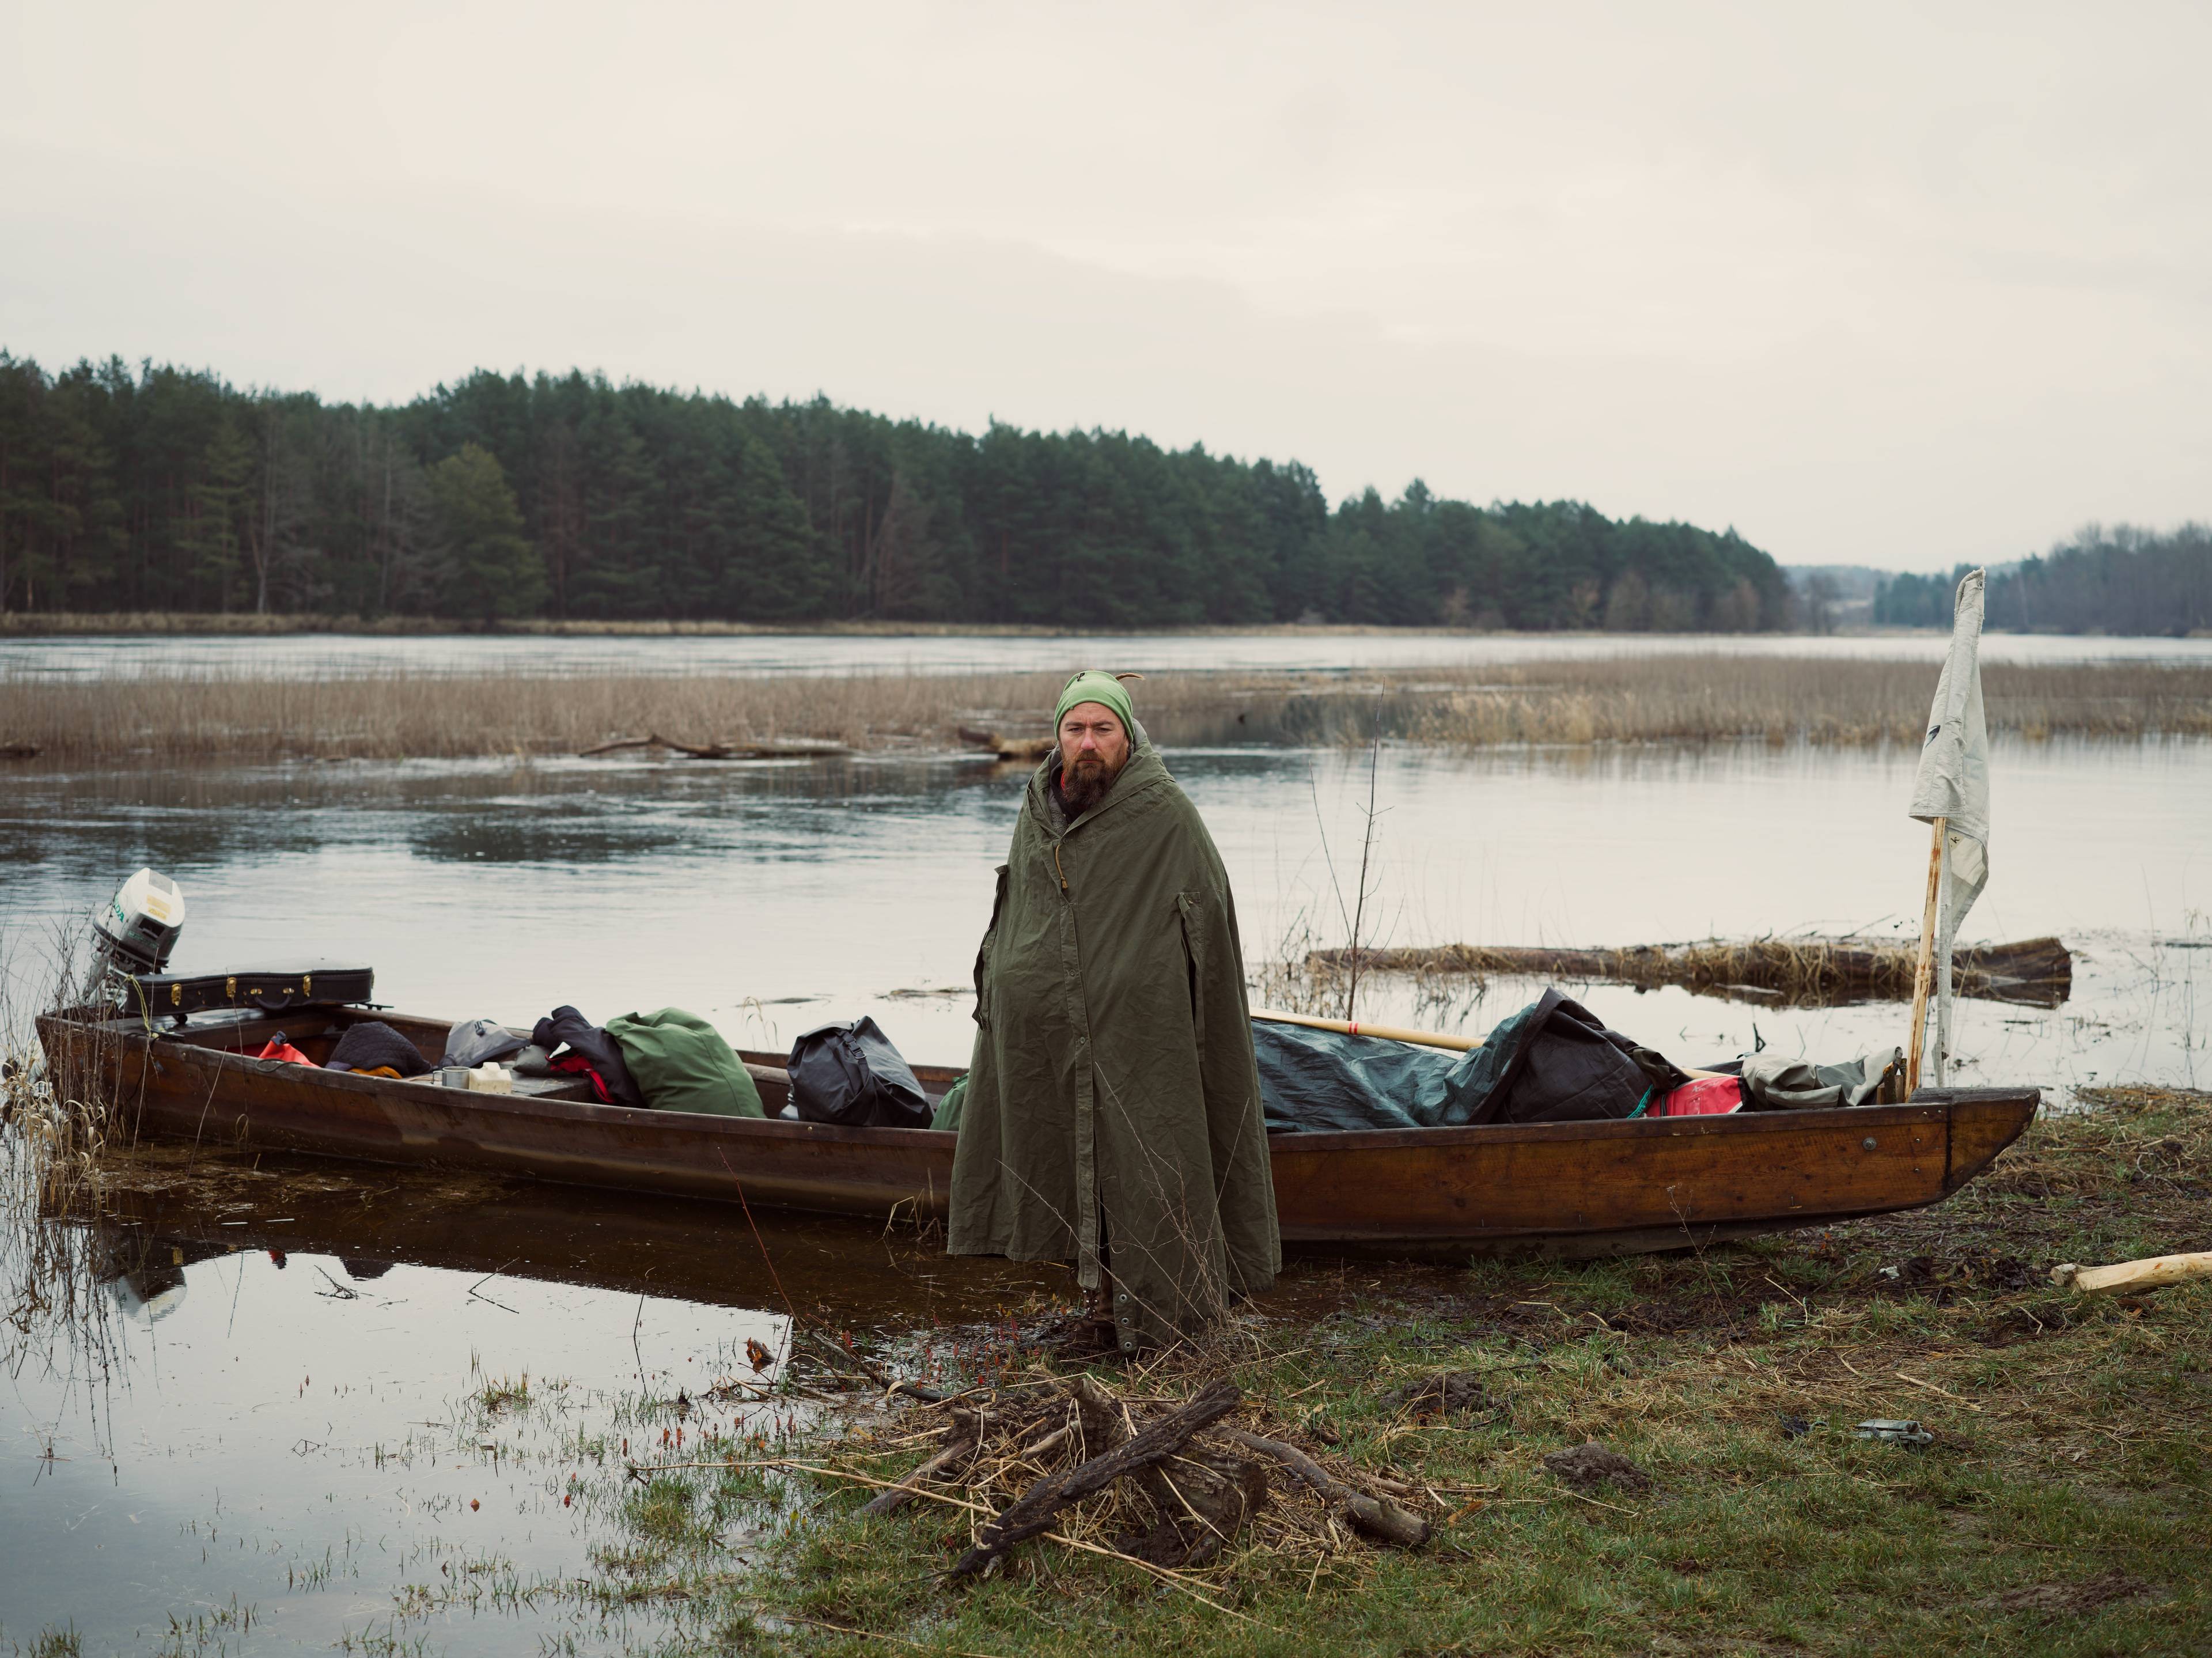 Michał Zygmunt stoi w przeciwdeszczowym płaszczu przy drewnianej łódce pełnej bagaży. Bug - Odra